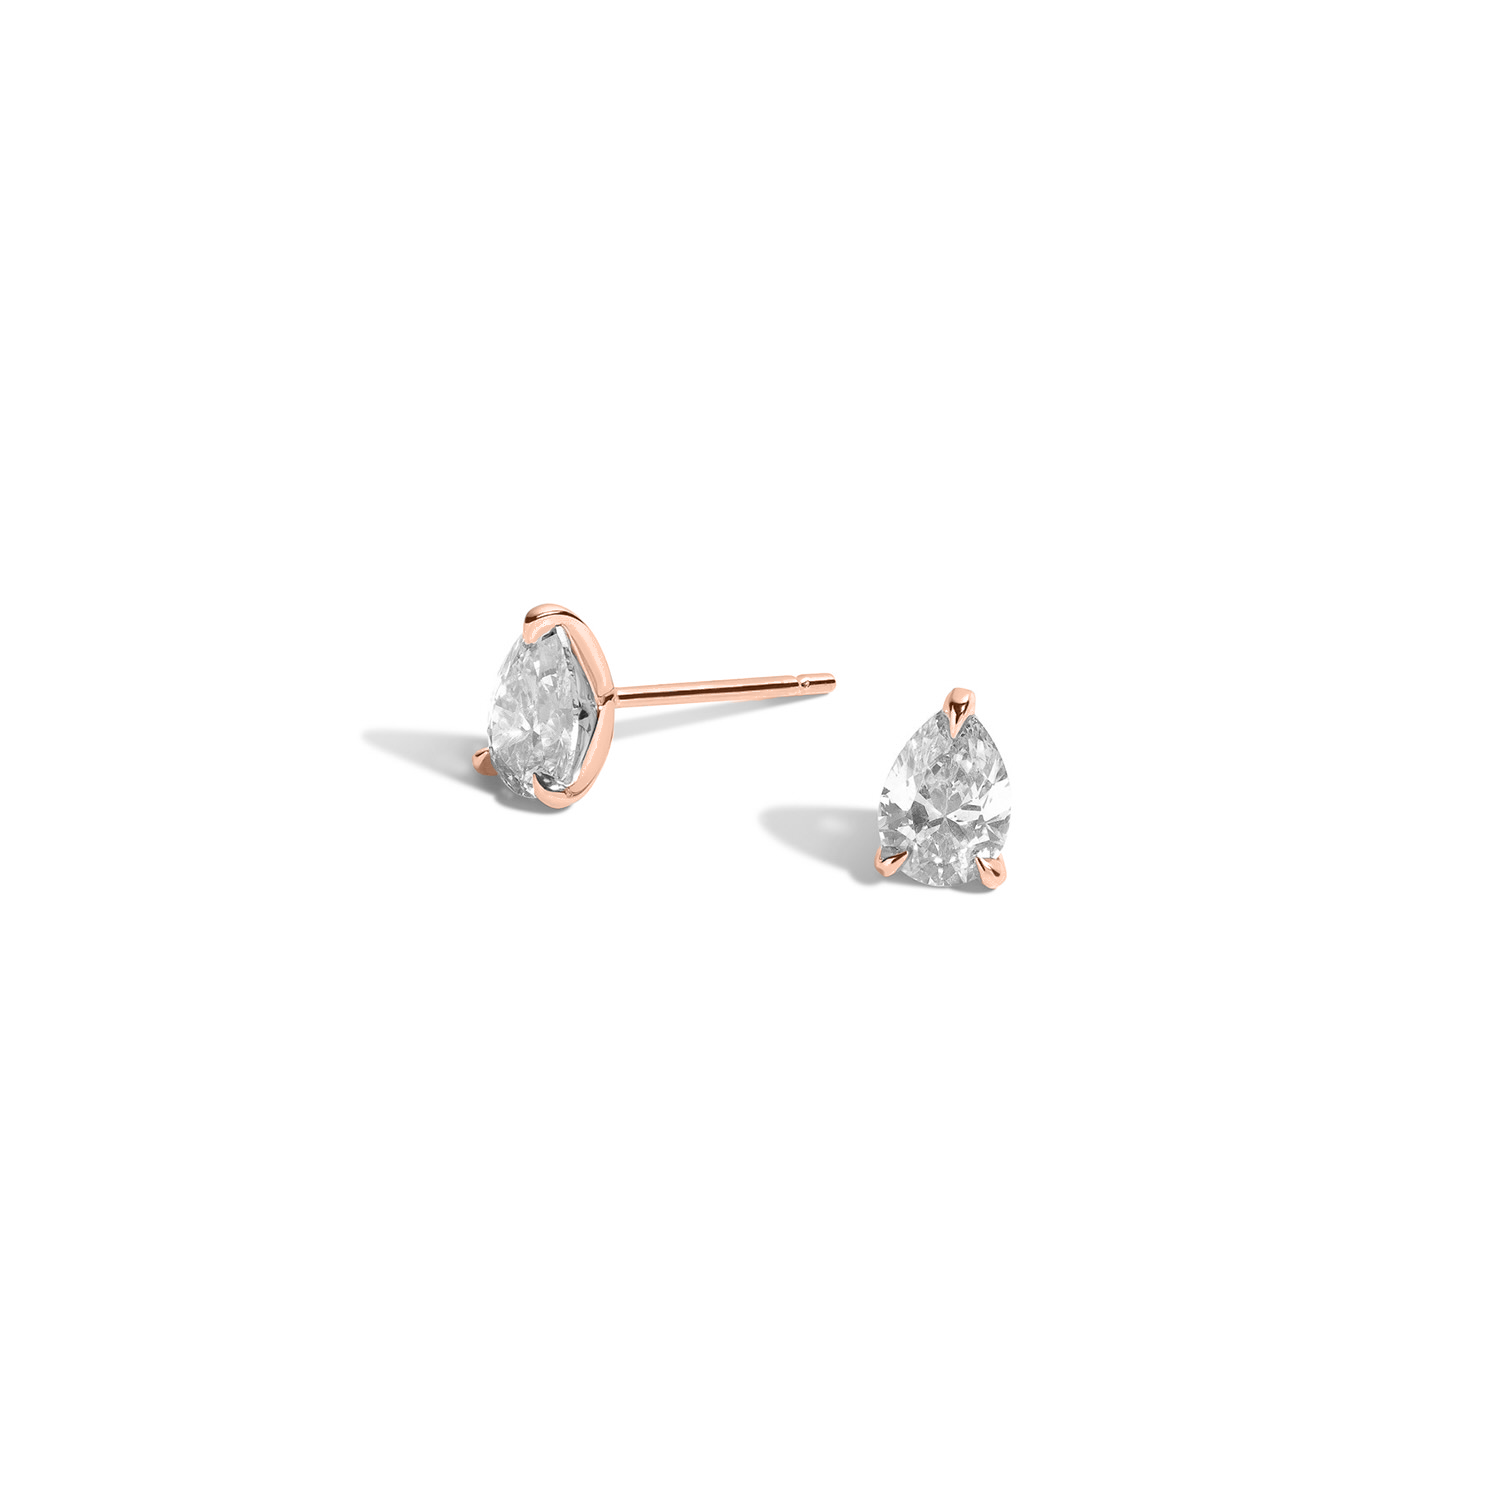 Shahla Karimi Medium Pear Diamond Earrings in 14K Rose Gold